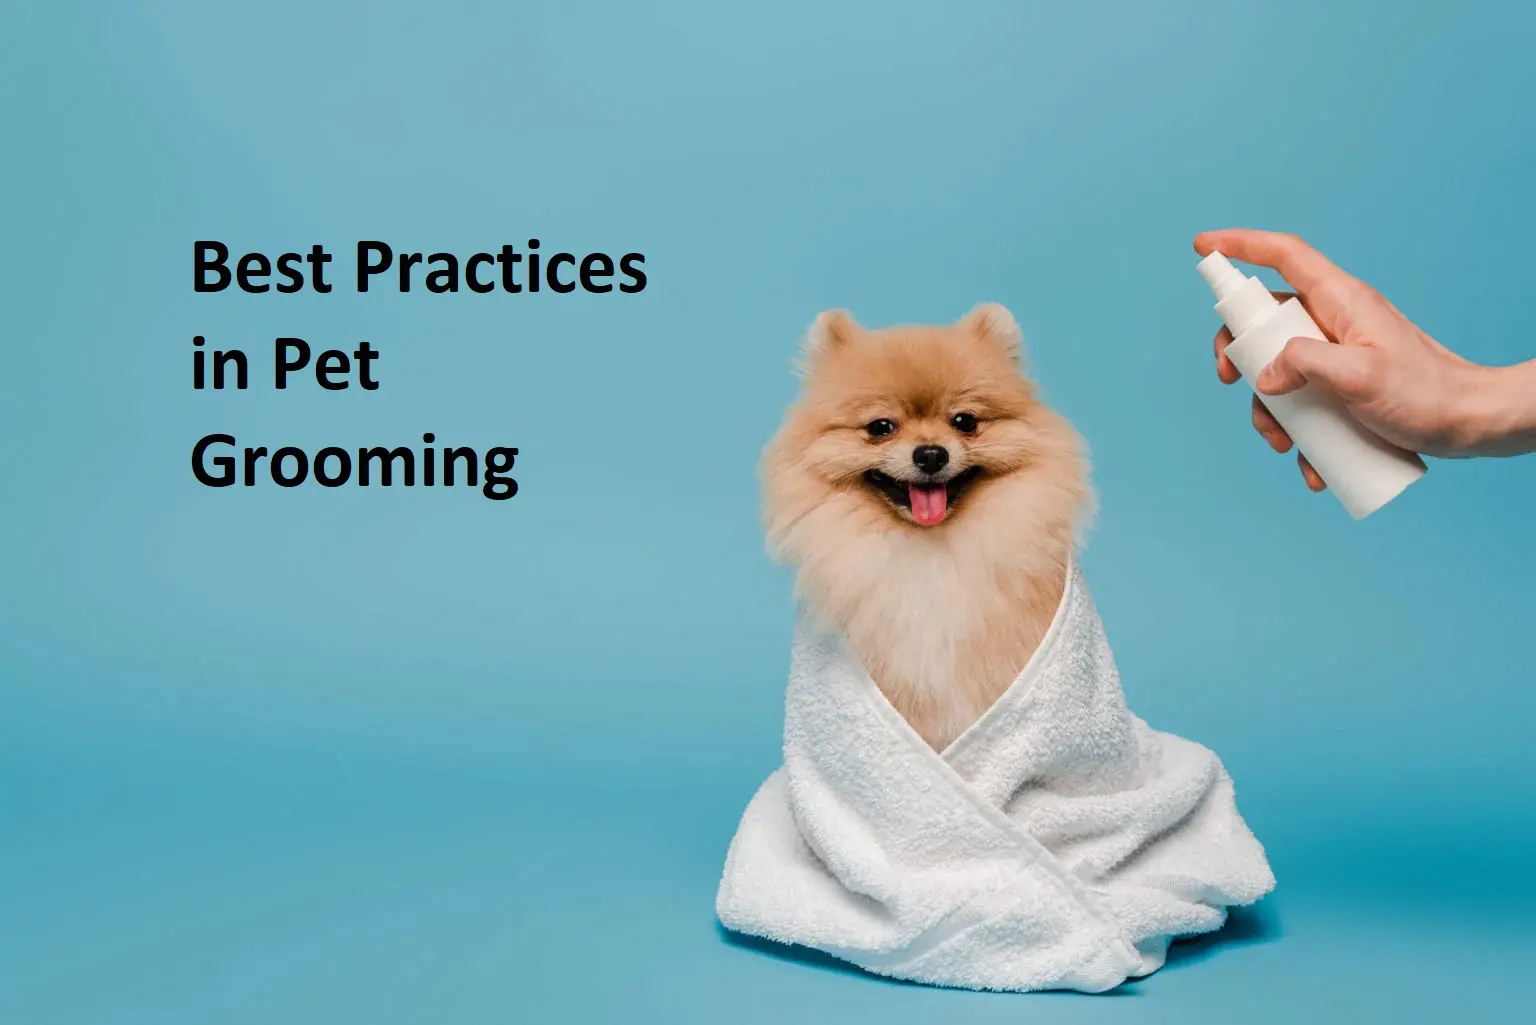 Best Practices in Pet Grooming